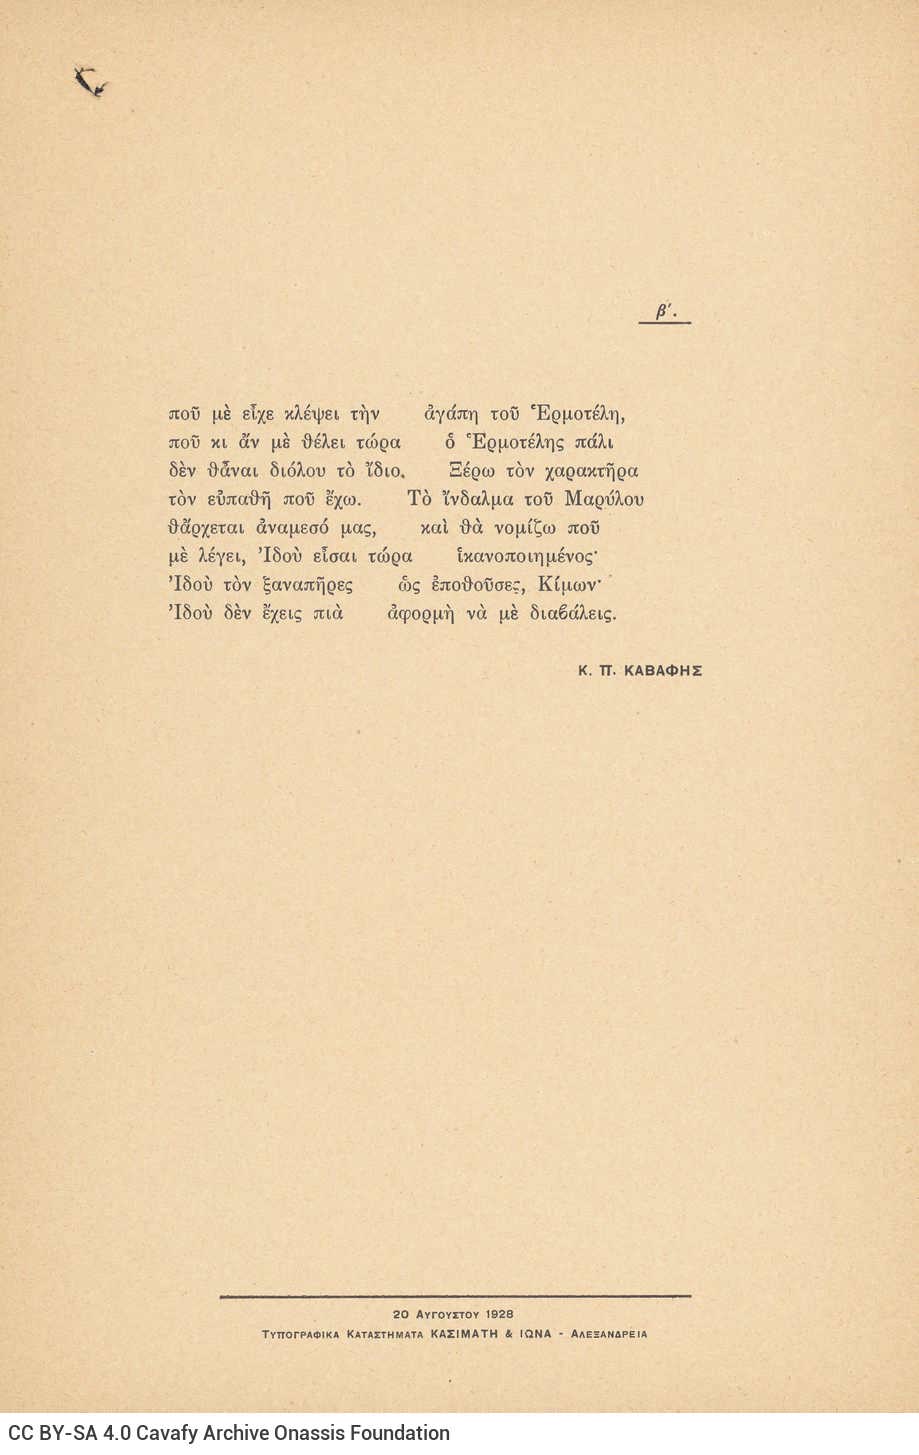 Συλλογή ποιημάτων του Καβάφη (Γ7), αποτελούμενη από 88 ποιήματα σε περ�